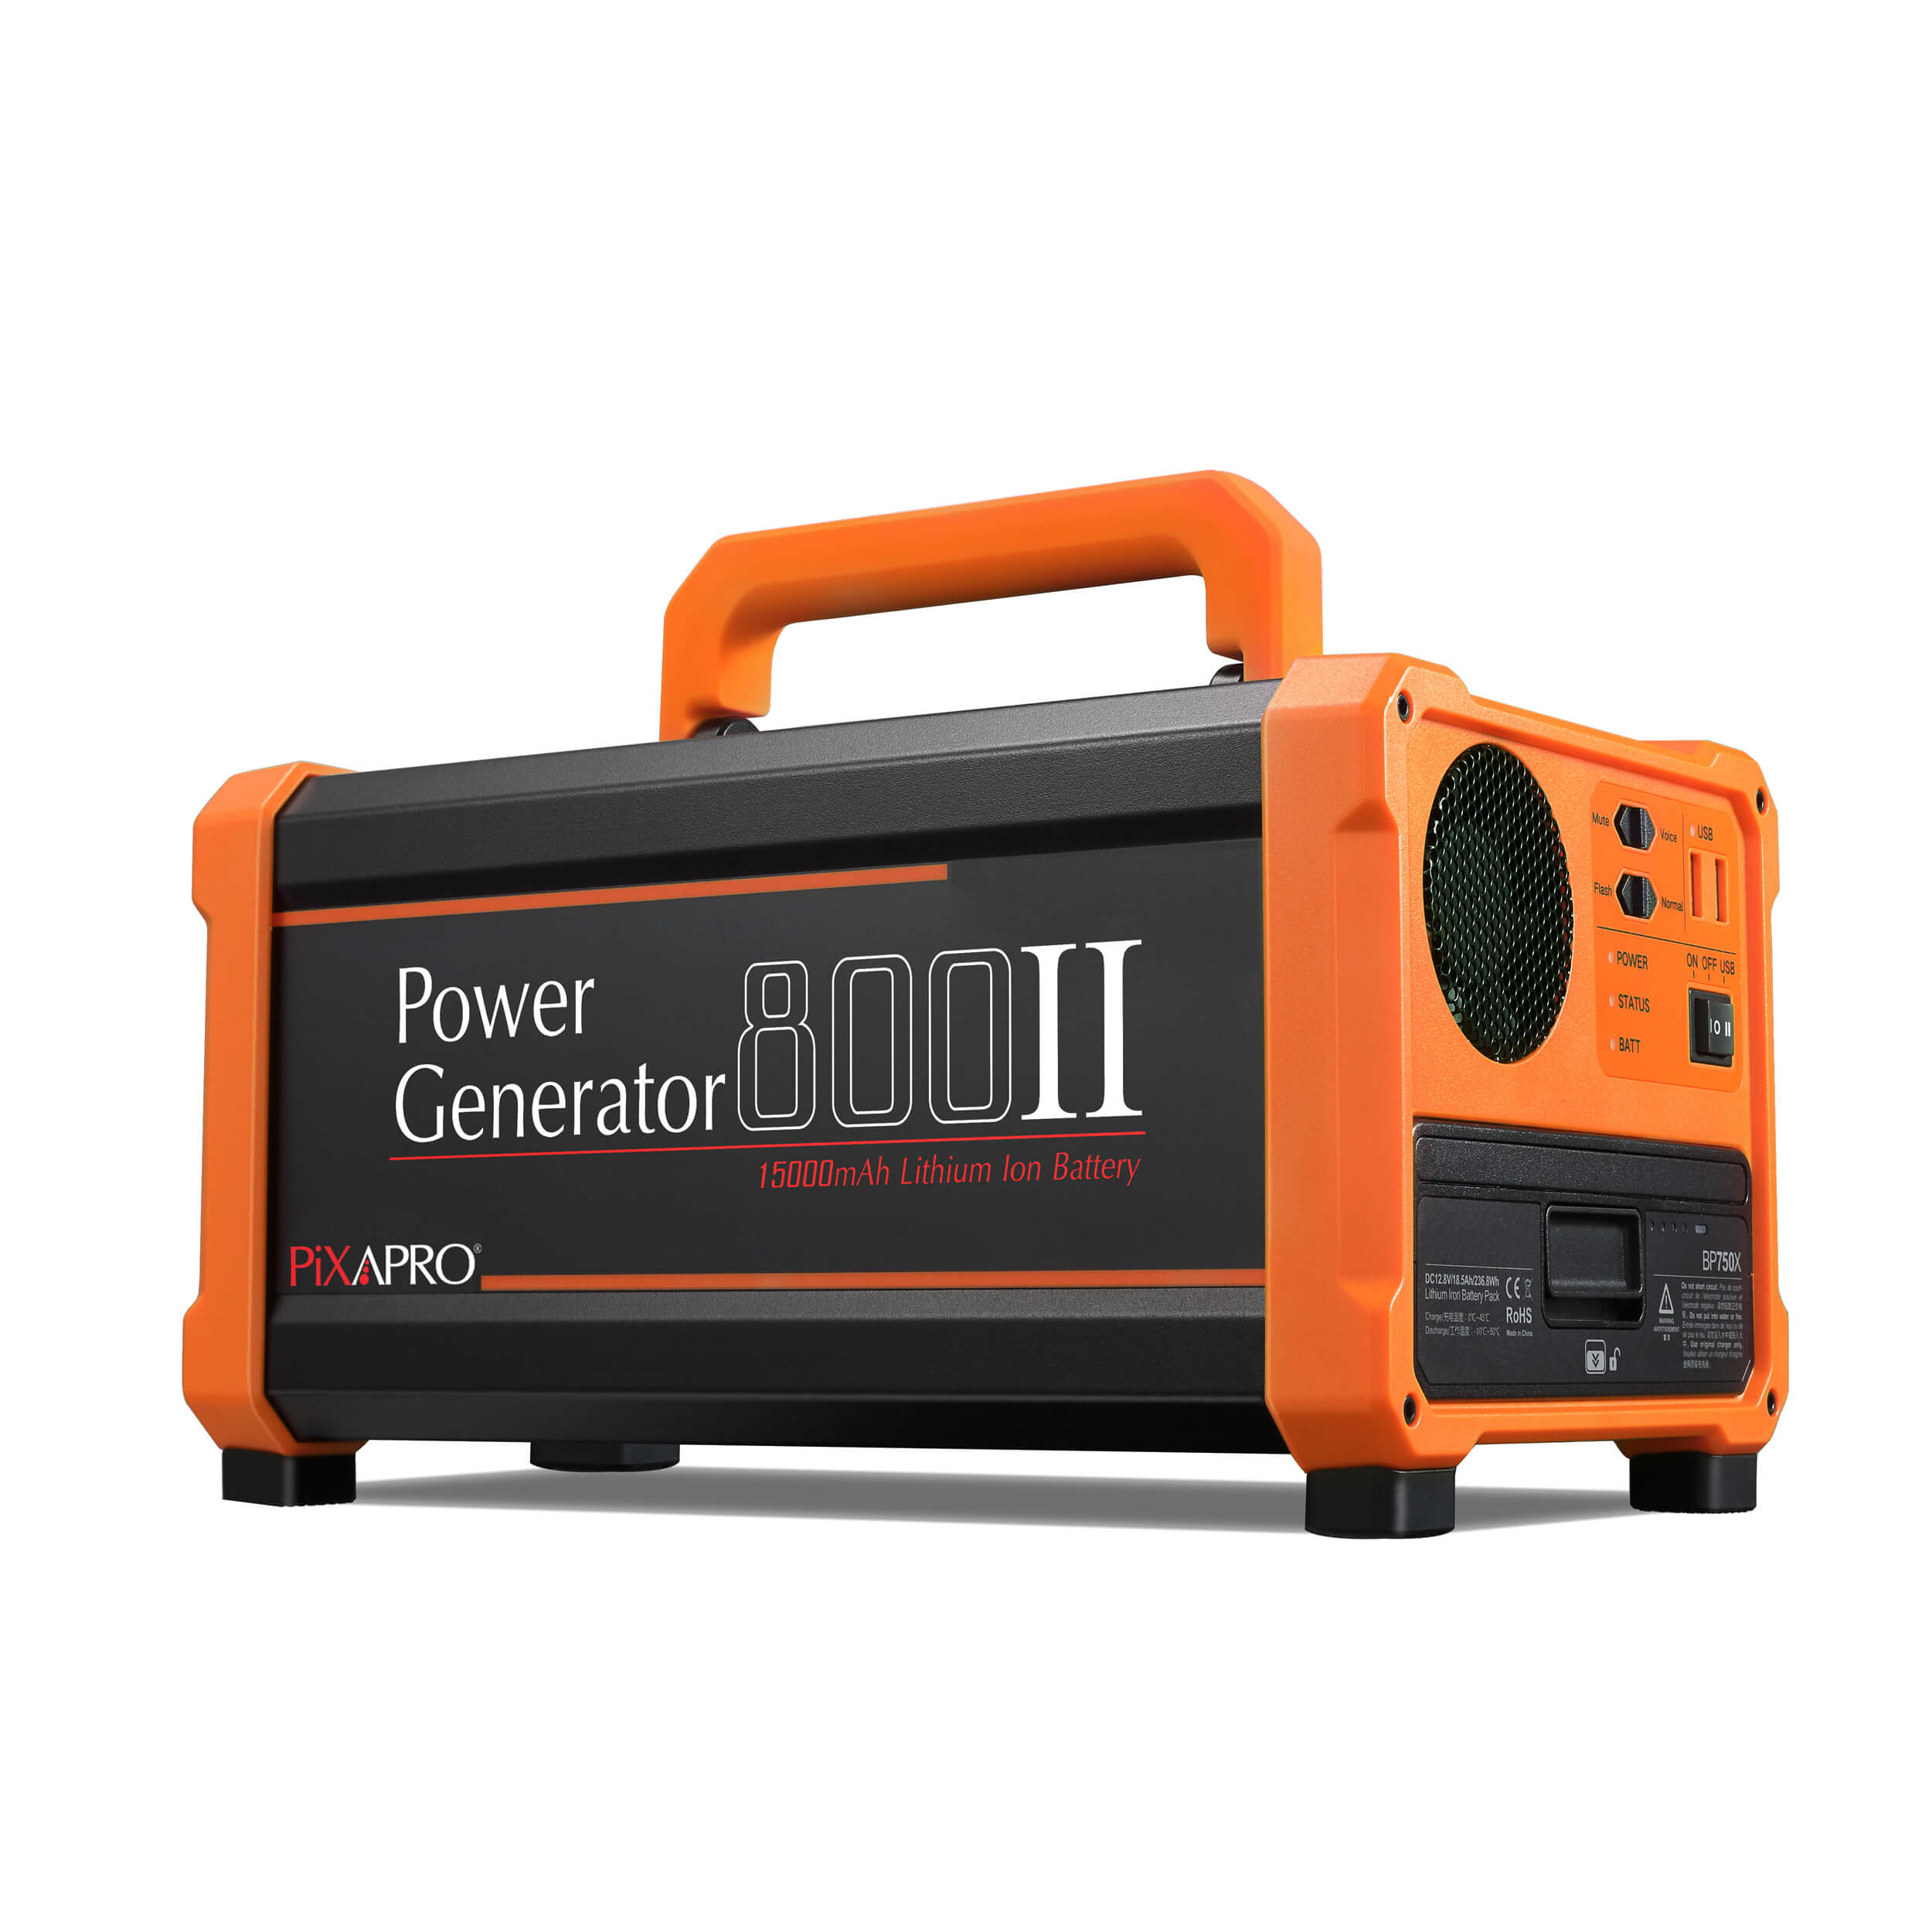 Power Generator 800 II with LiFePO4 Battery Backup